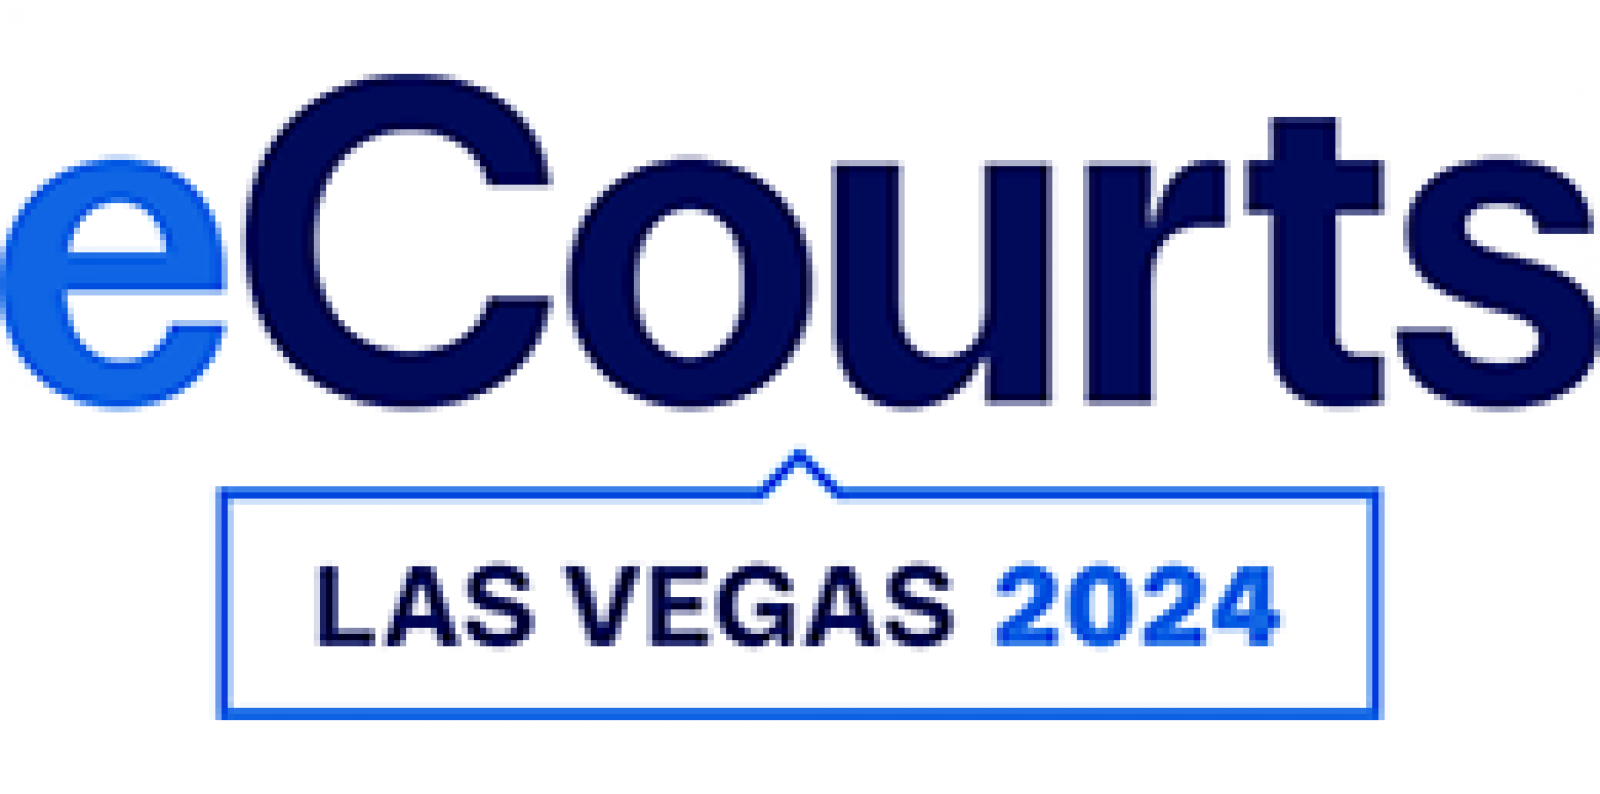 Las Vegas banner image